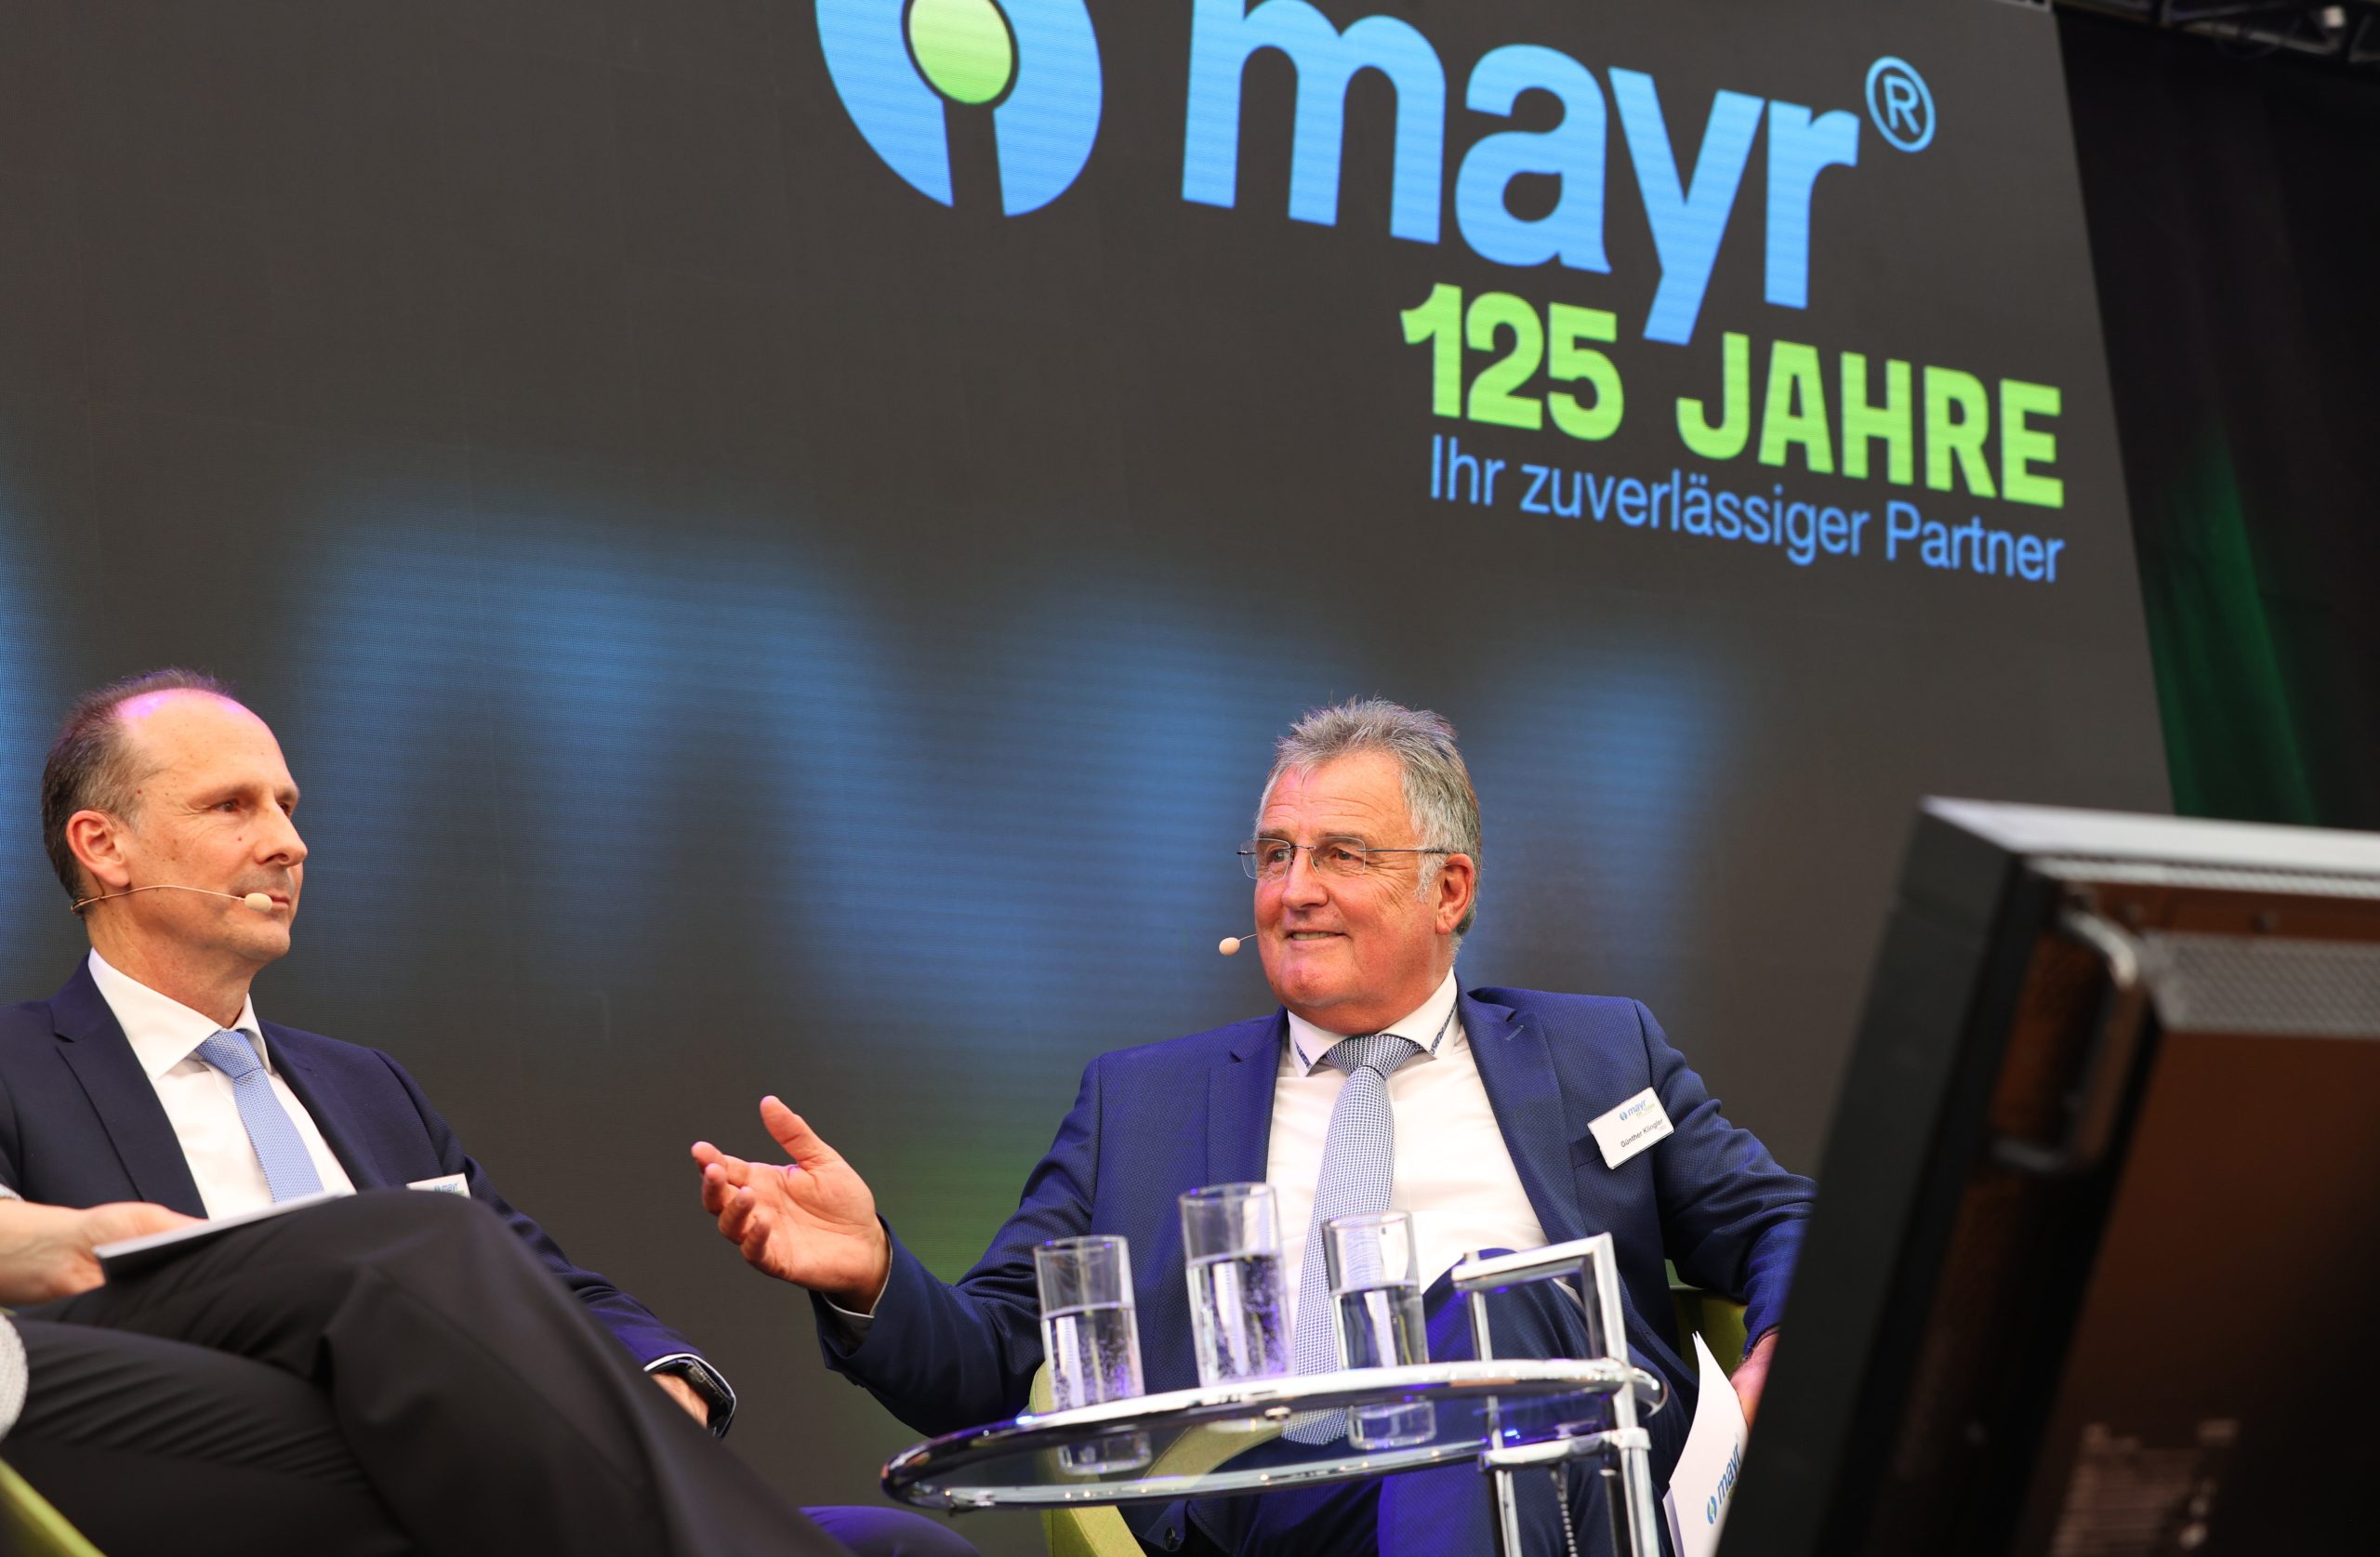 125-jähriges Firmenjubiläum von Mayr Antriebstechnik